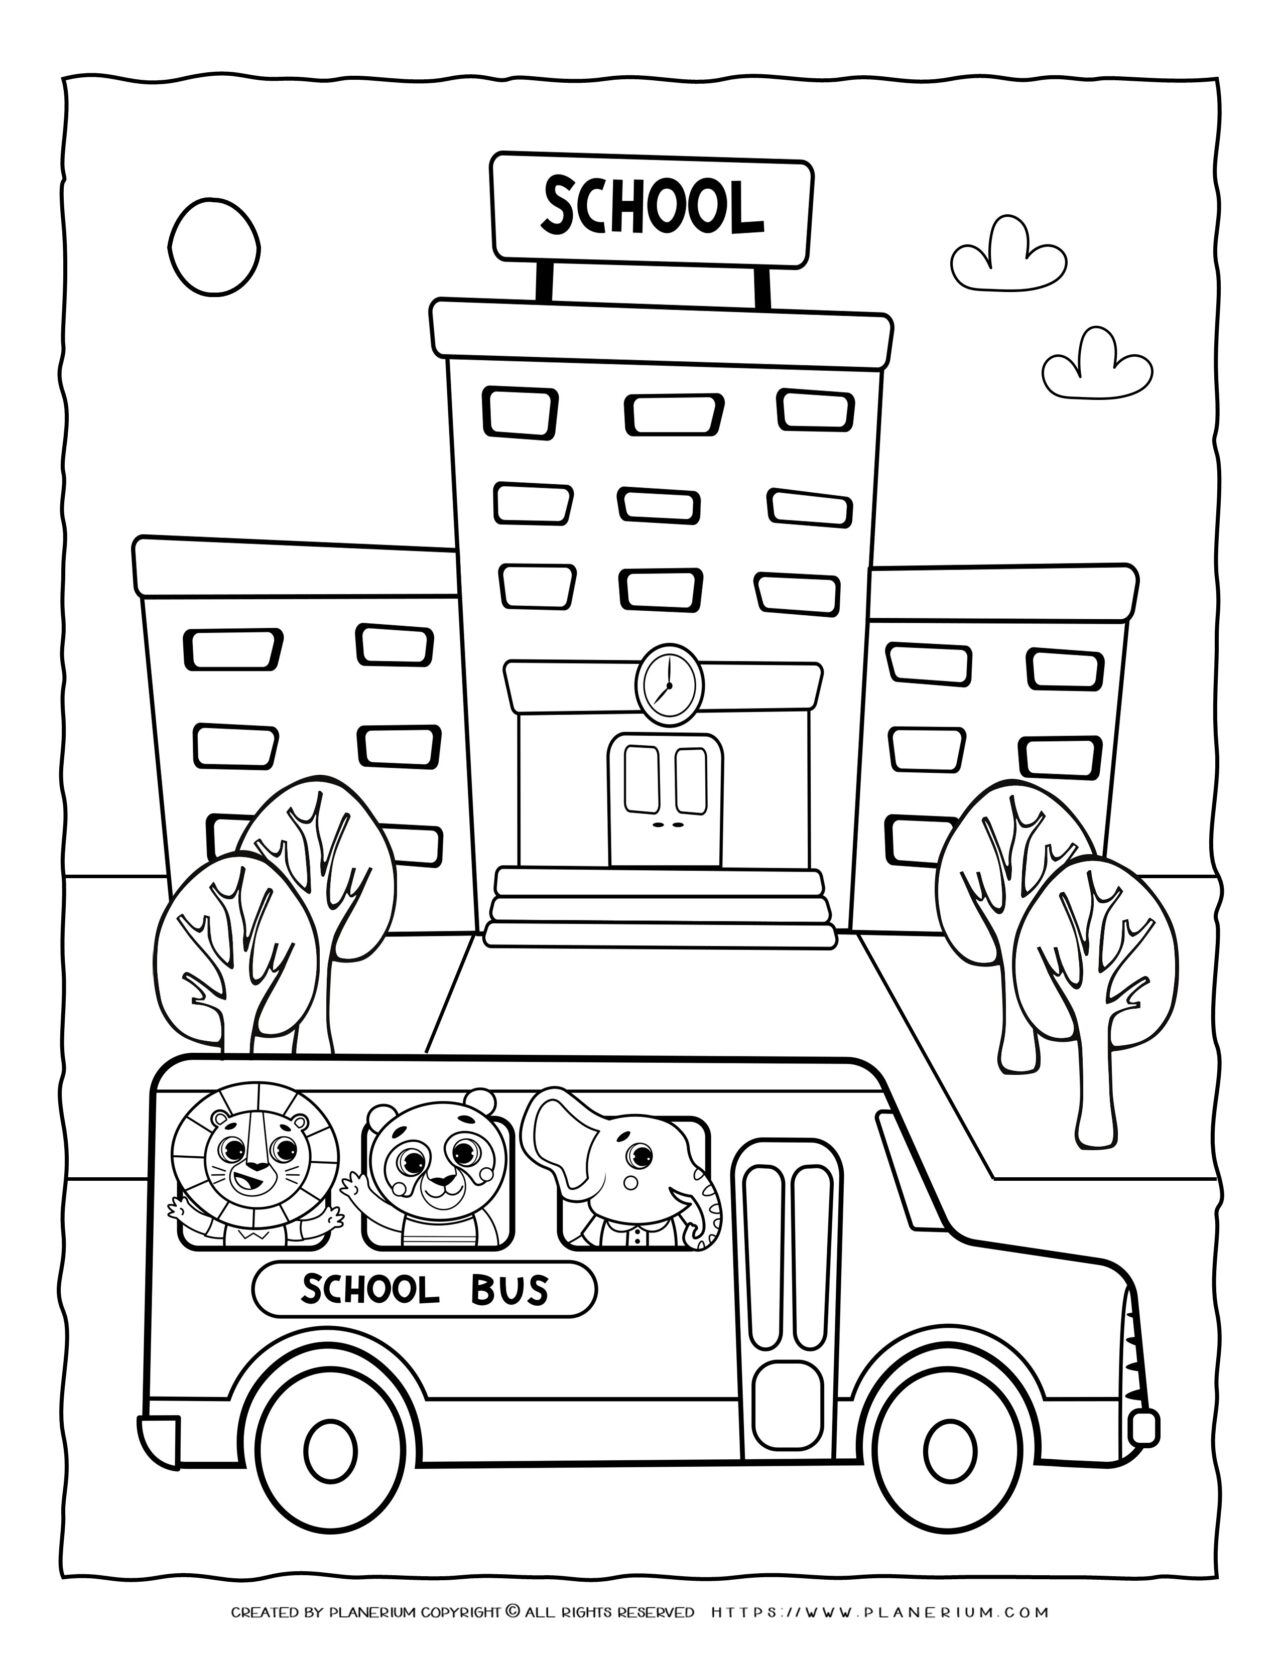 School Bus Coloring Page | Planerium